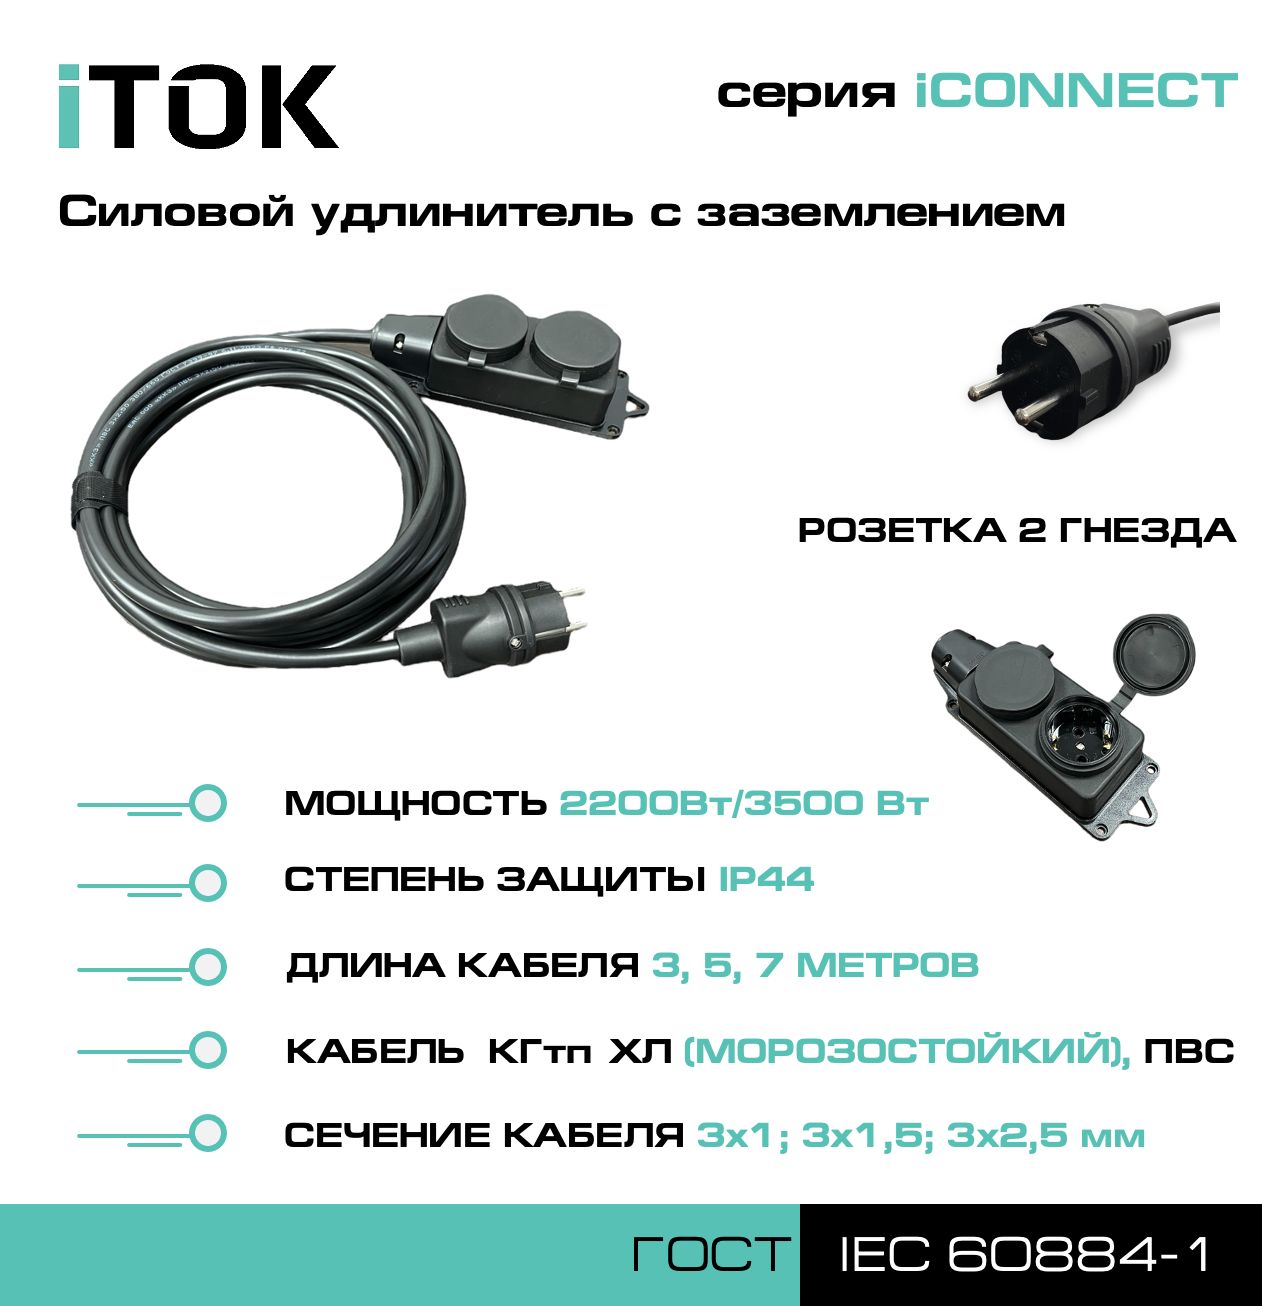 Удлинитель с заземлением серии iTOK iCONNECT ПВС 3х1,5 мм 2 гнезда IP44 5 м